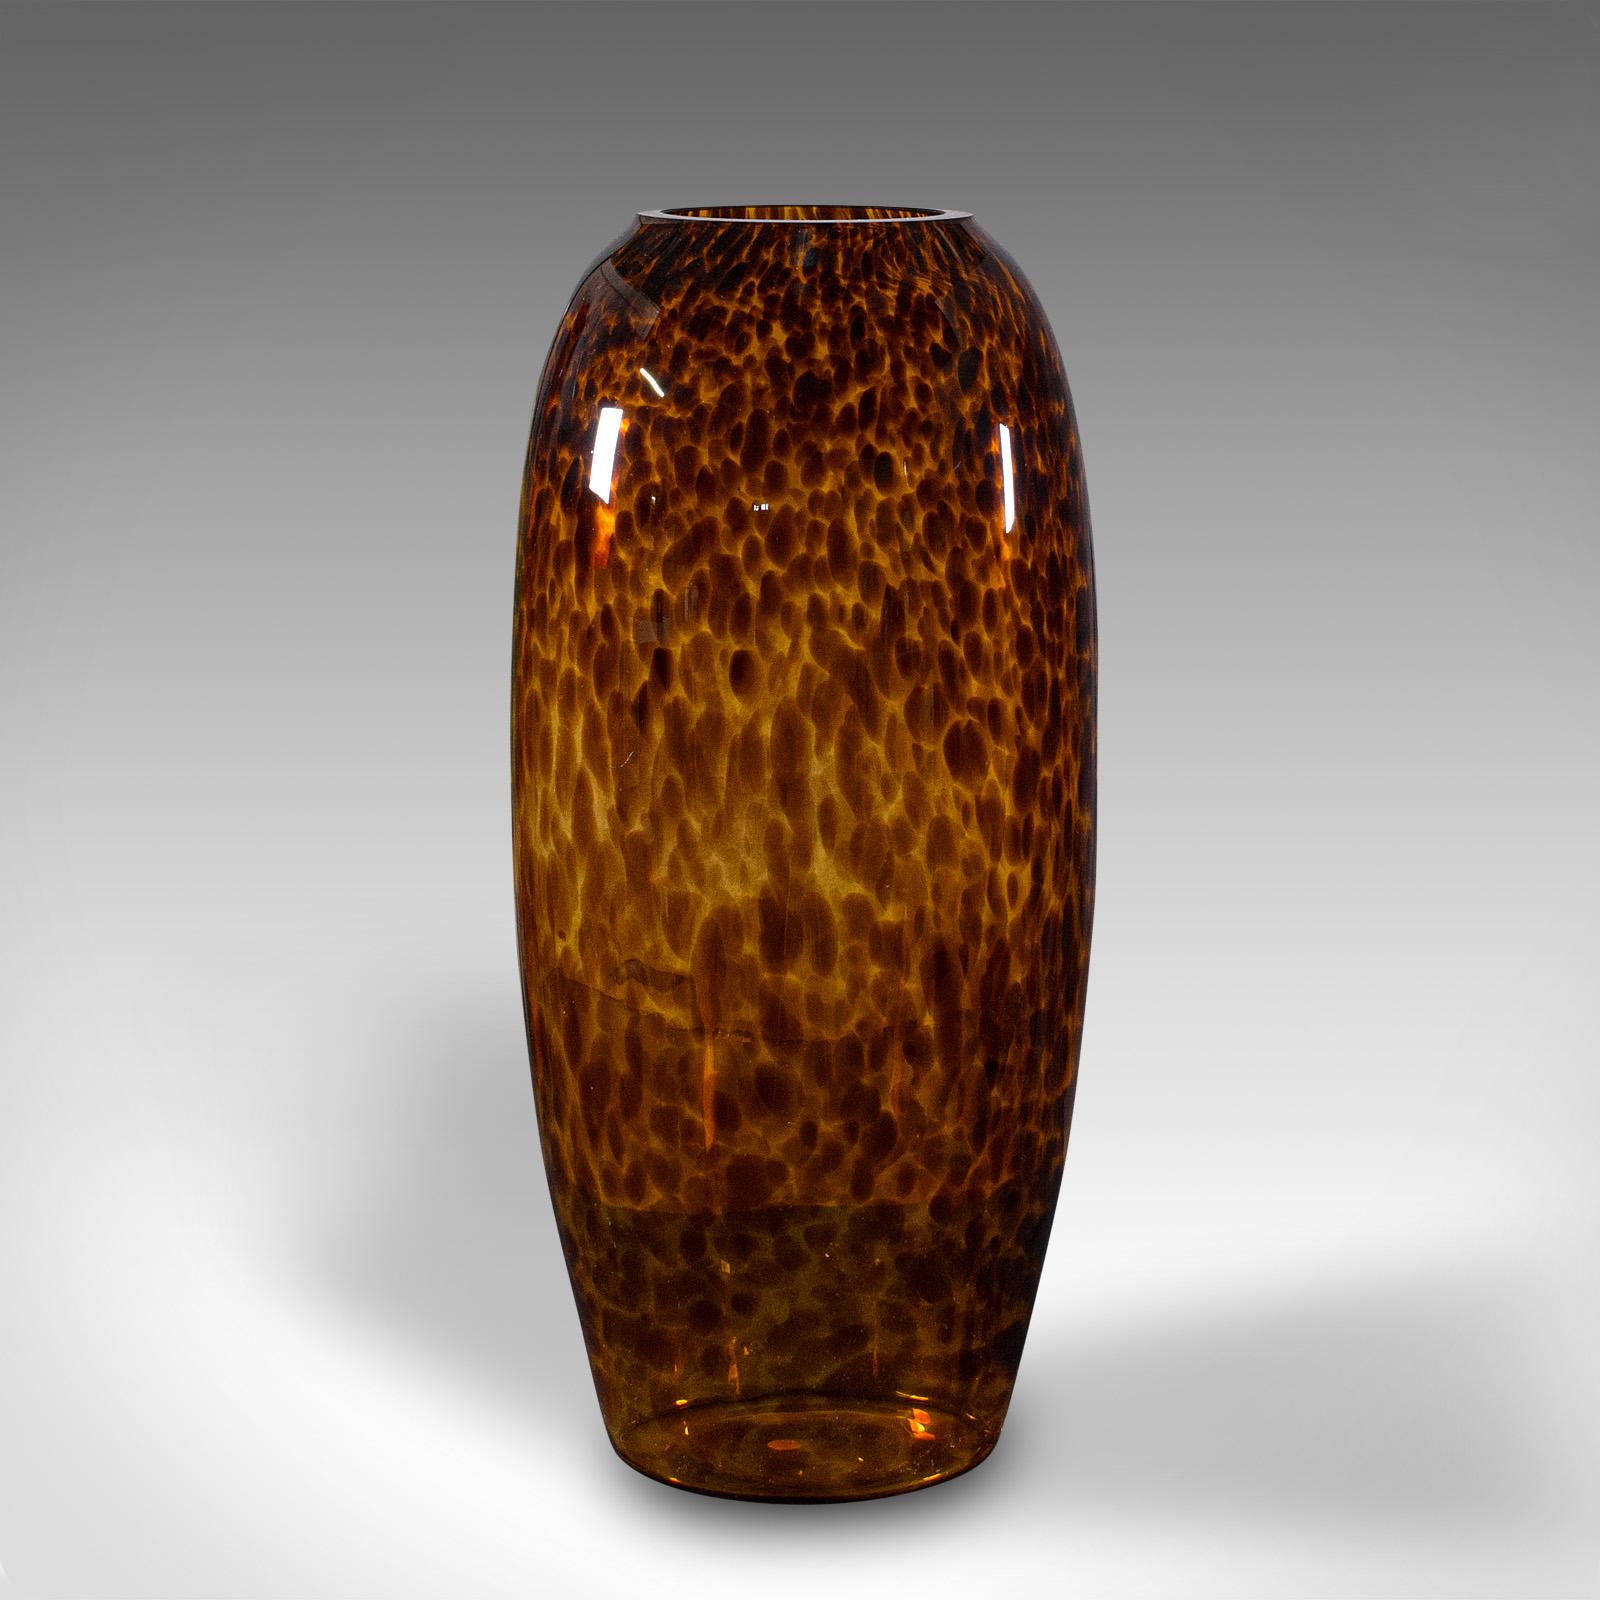 Il s'agit d'un grand vase ambre vintage. Un manchon de fleur italien en verre d'art avec un motif décoratif, datant de la fin du 20e siècle, vers 1970.

Des couleurs et des formes saisissantes, une délicieuse expression de l'époque.
Présente une